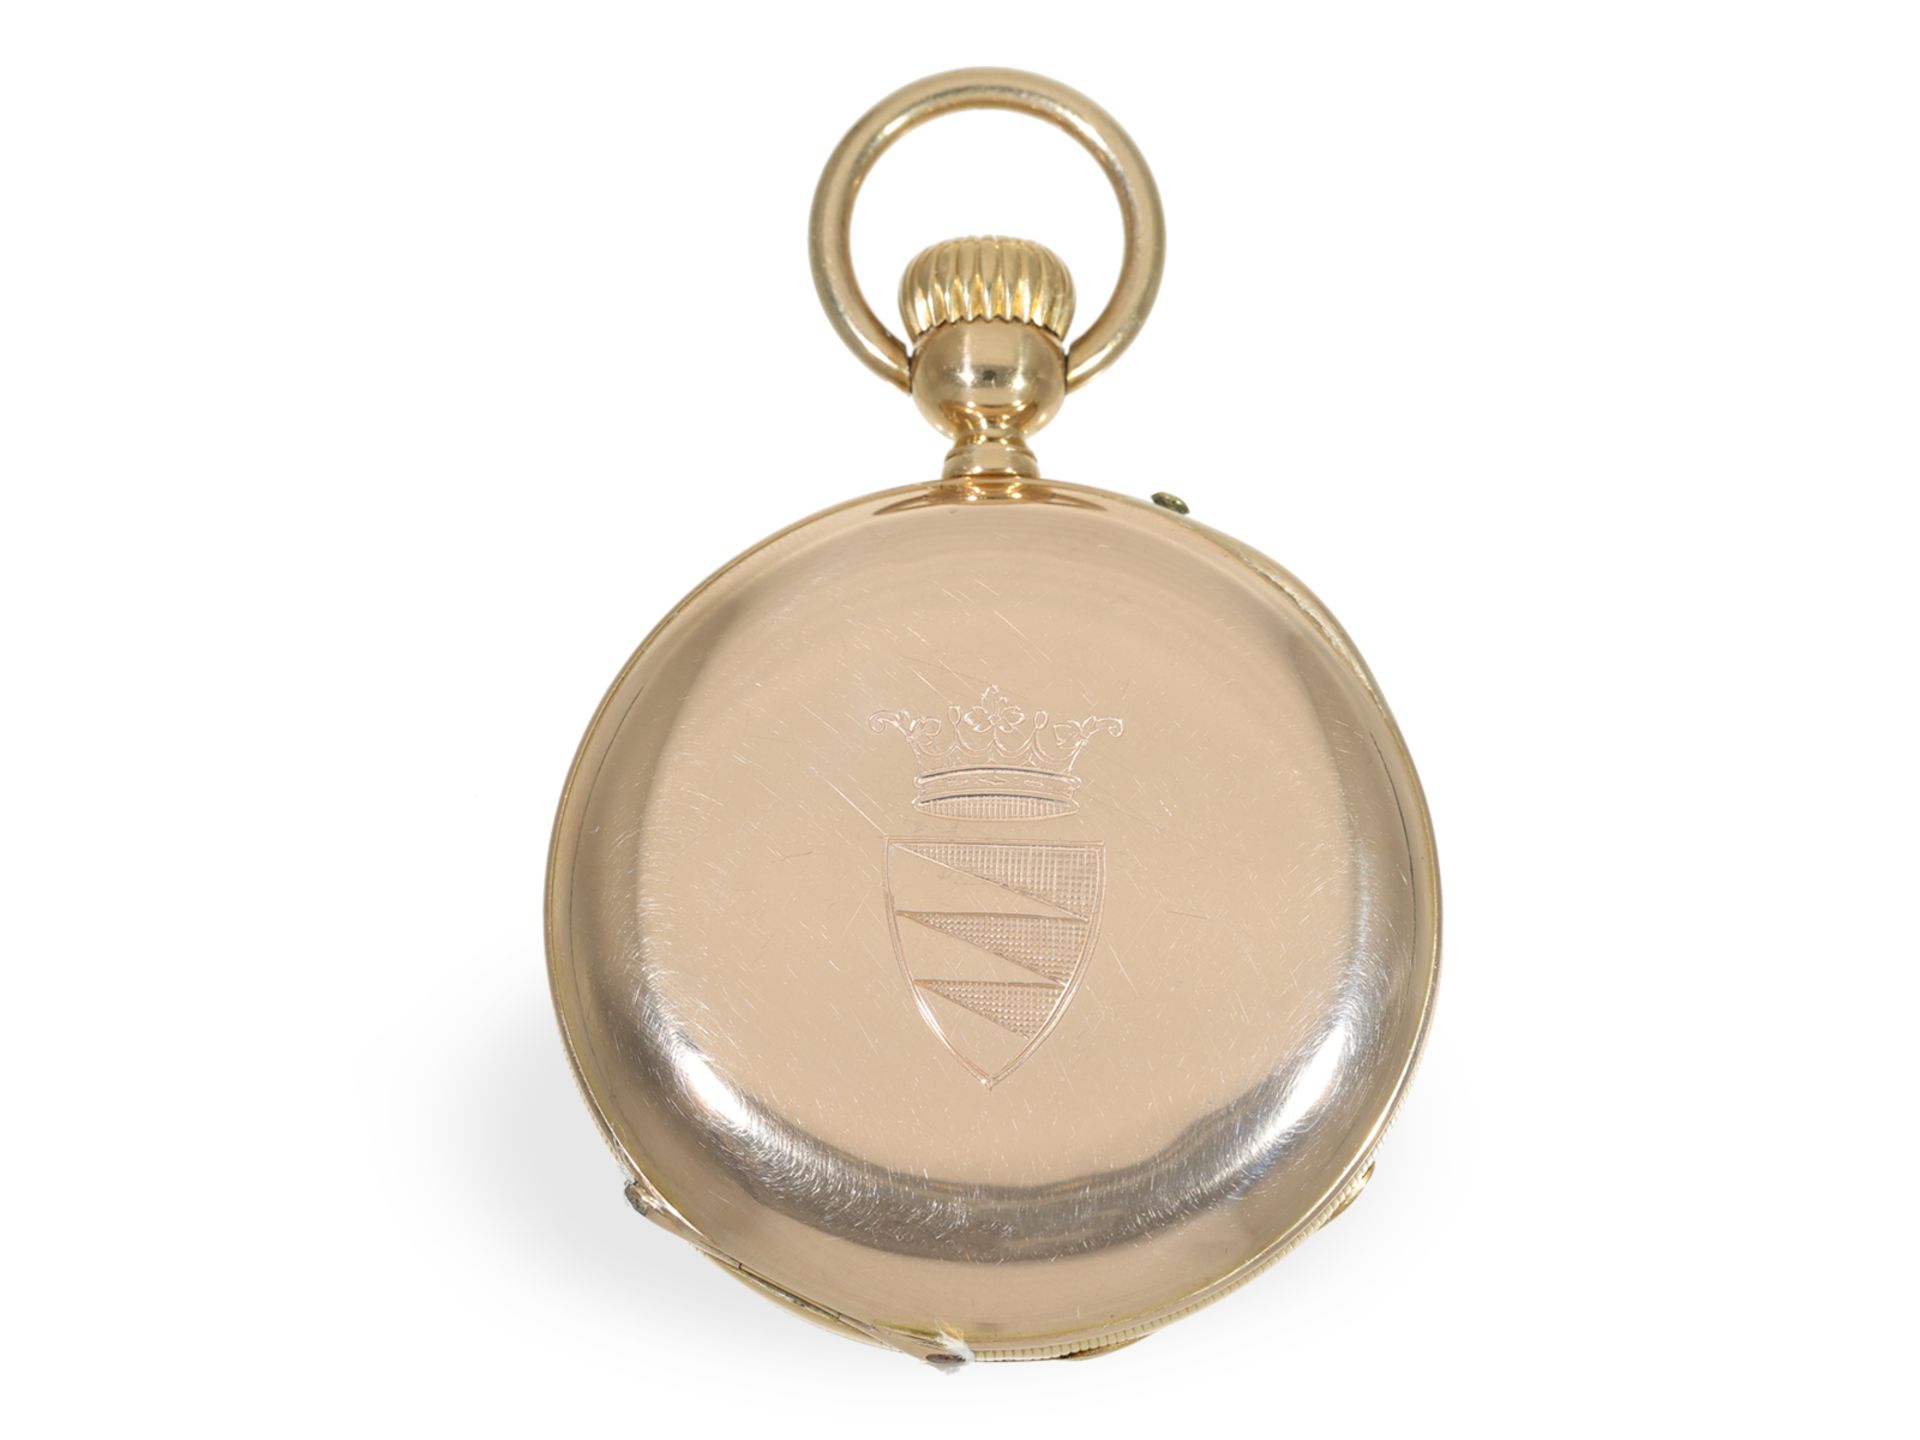 Taschenuhr: frühe Präzisionstaschenuhr mit Kronenaufzug, verm. Le Coultre um 1865 - Bild 2 aus 5